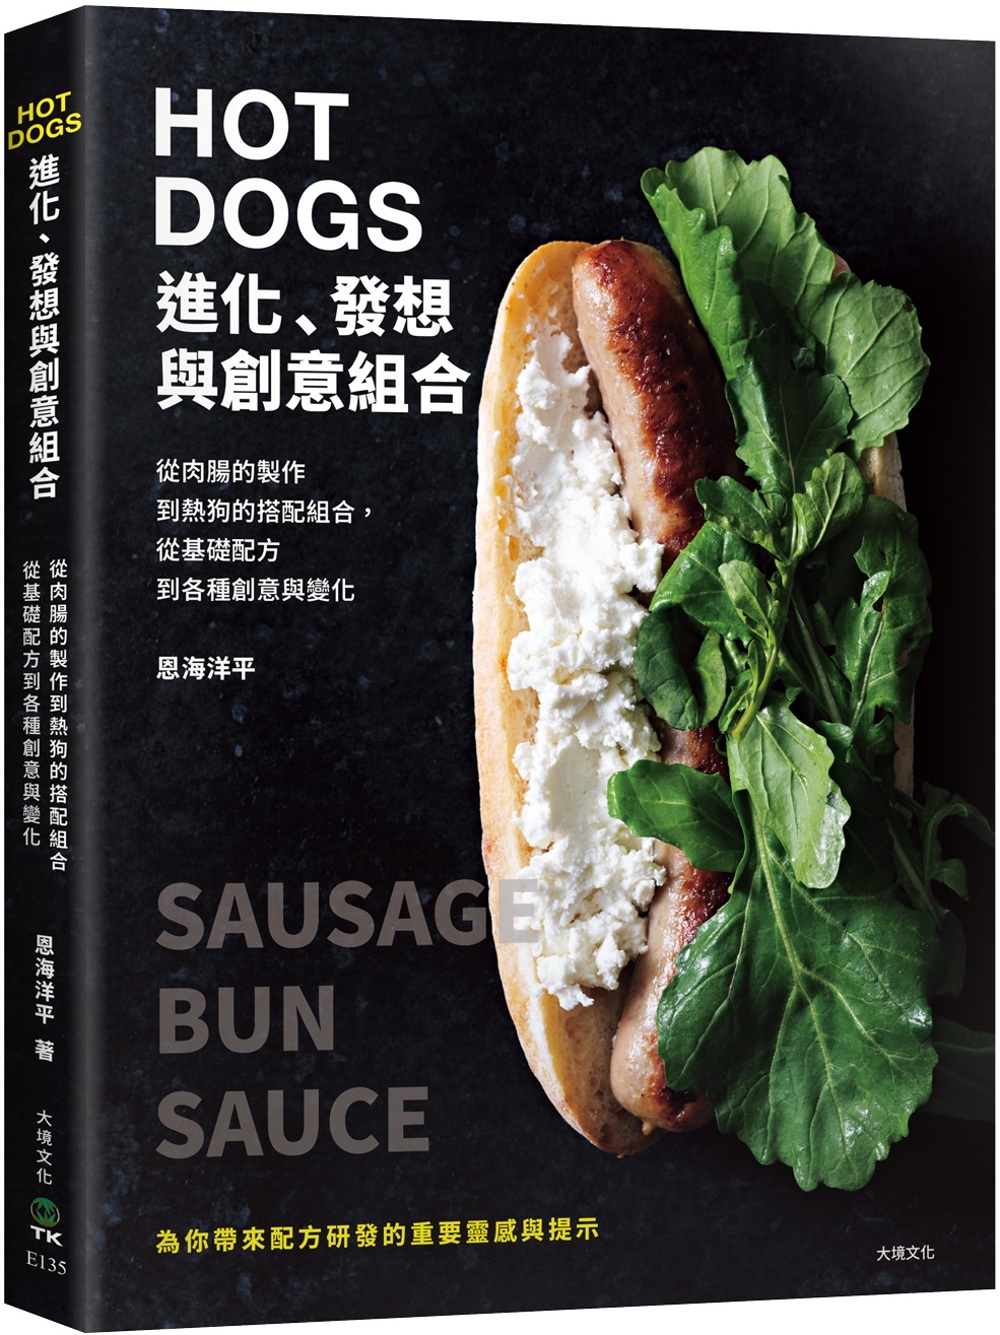 HOT DOGS的進化、發想與創意組合：榮獲日本IFFA金獎...